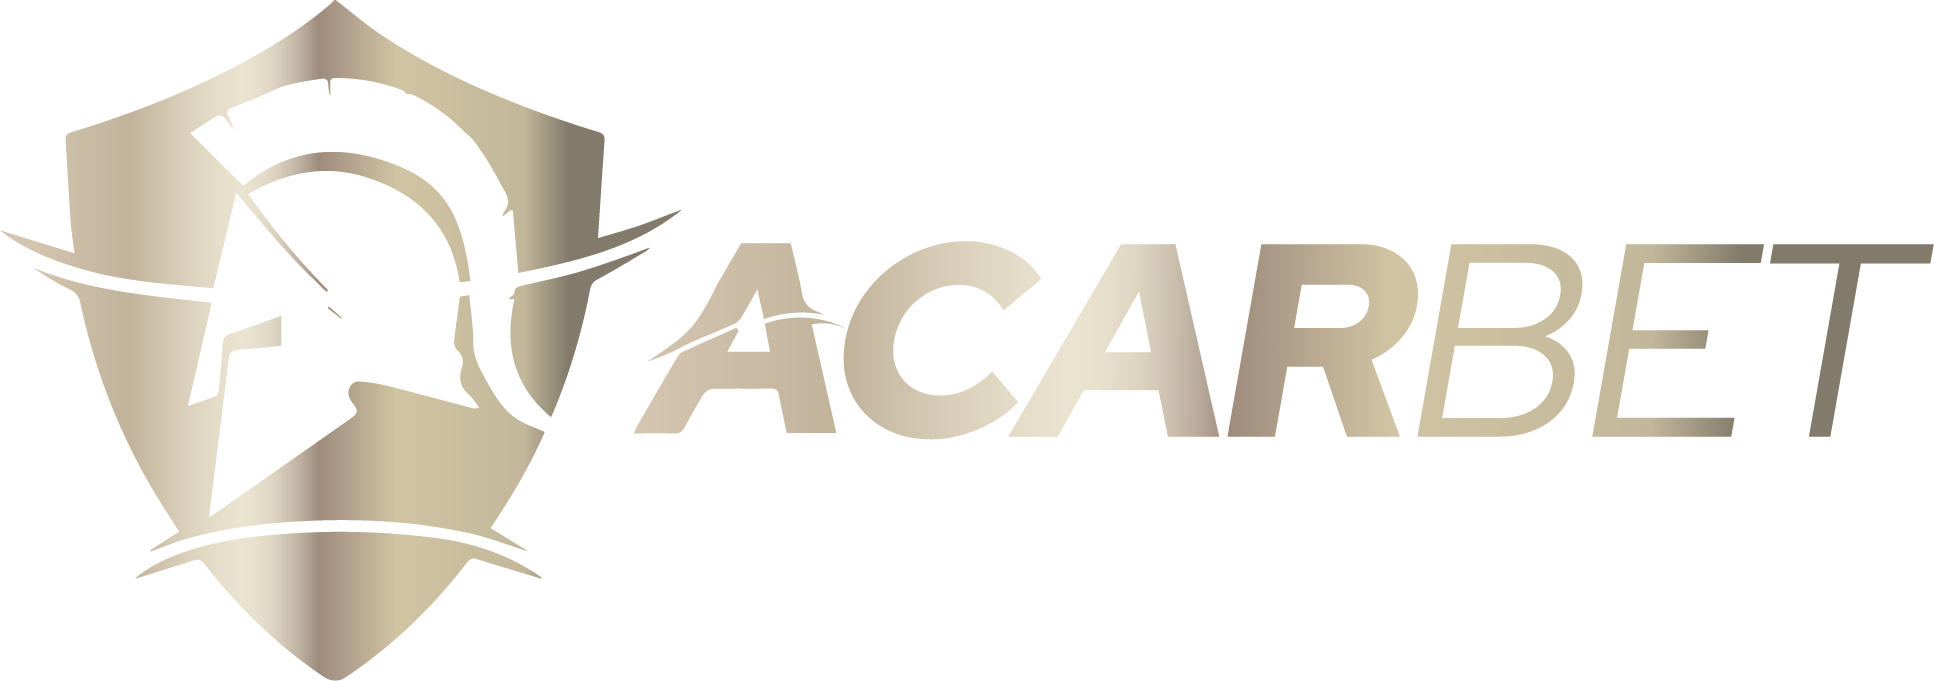 Acarbet logo